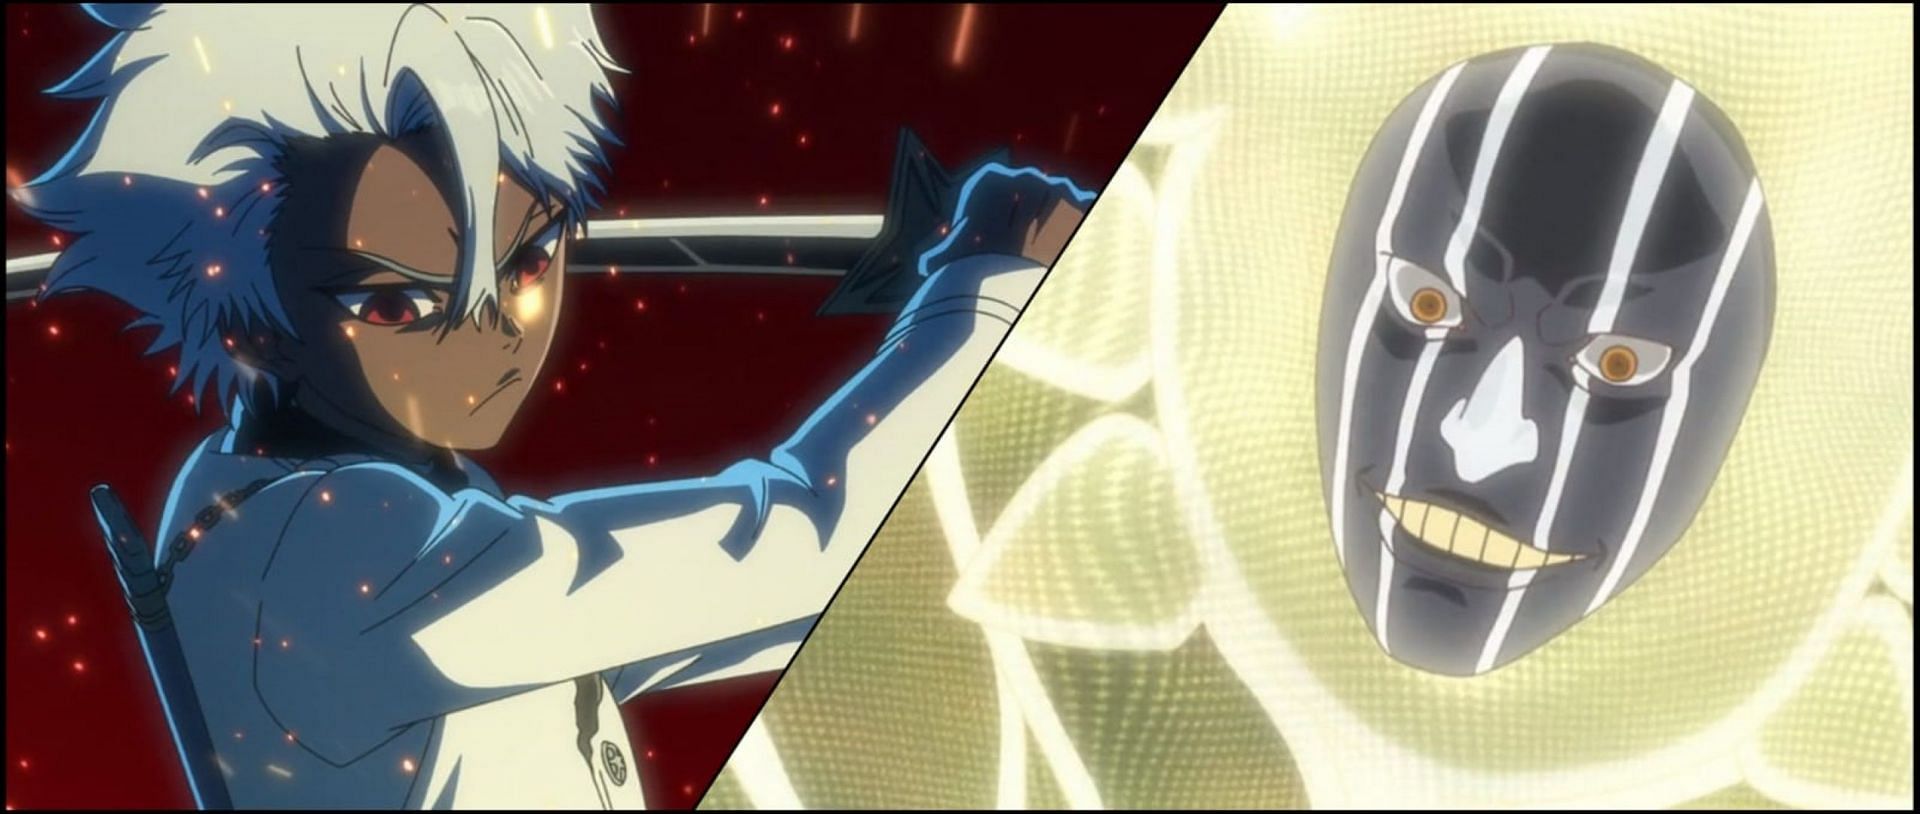 Toshiro vs Mayuri in Bleach TYBW episode 23 (Image via Pierrot)